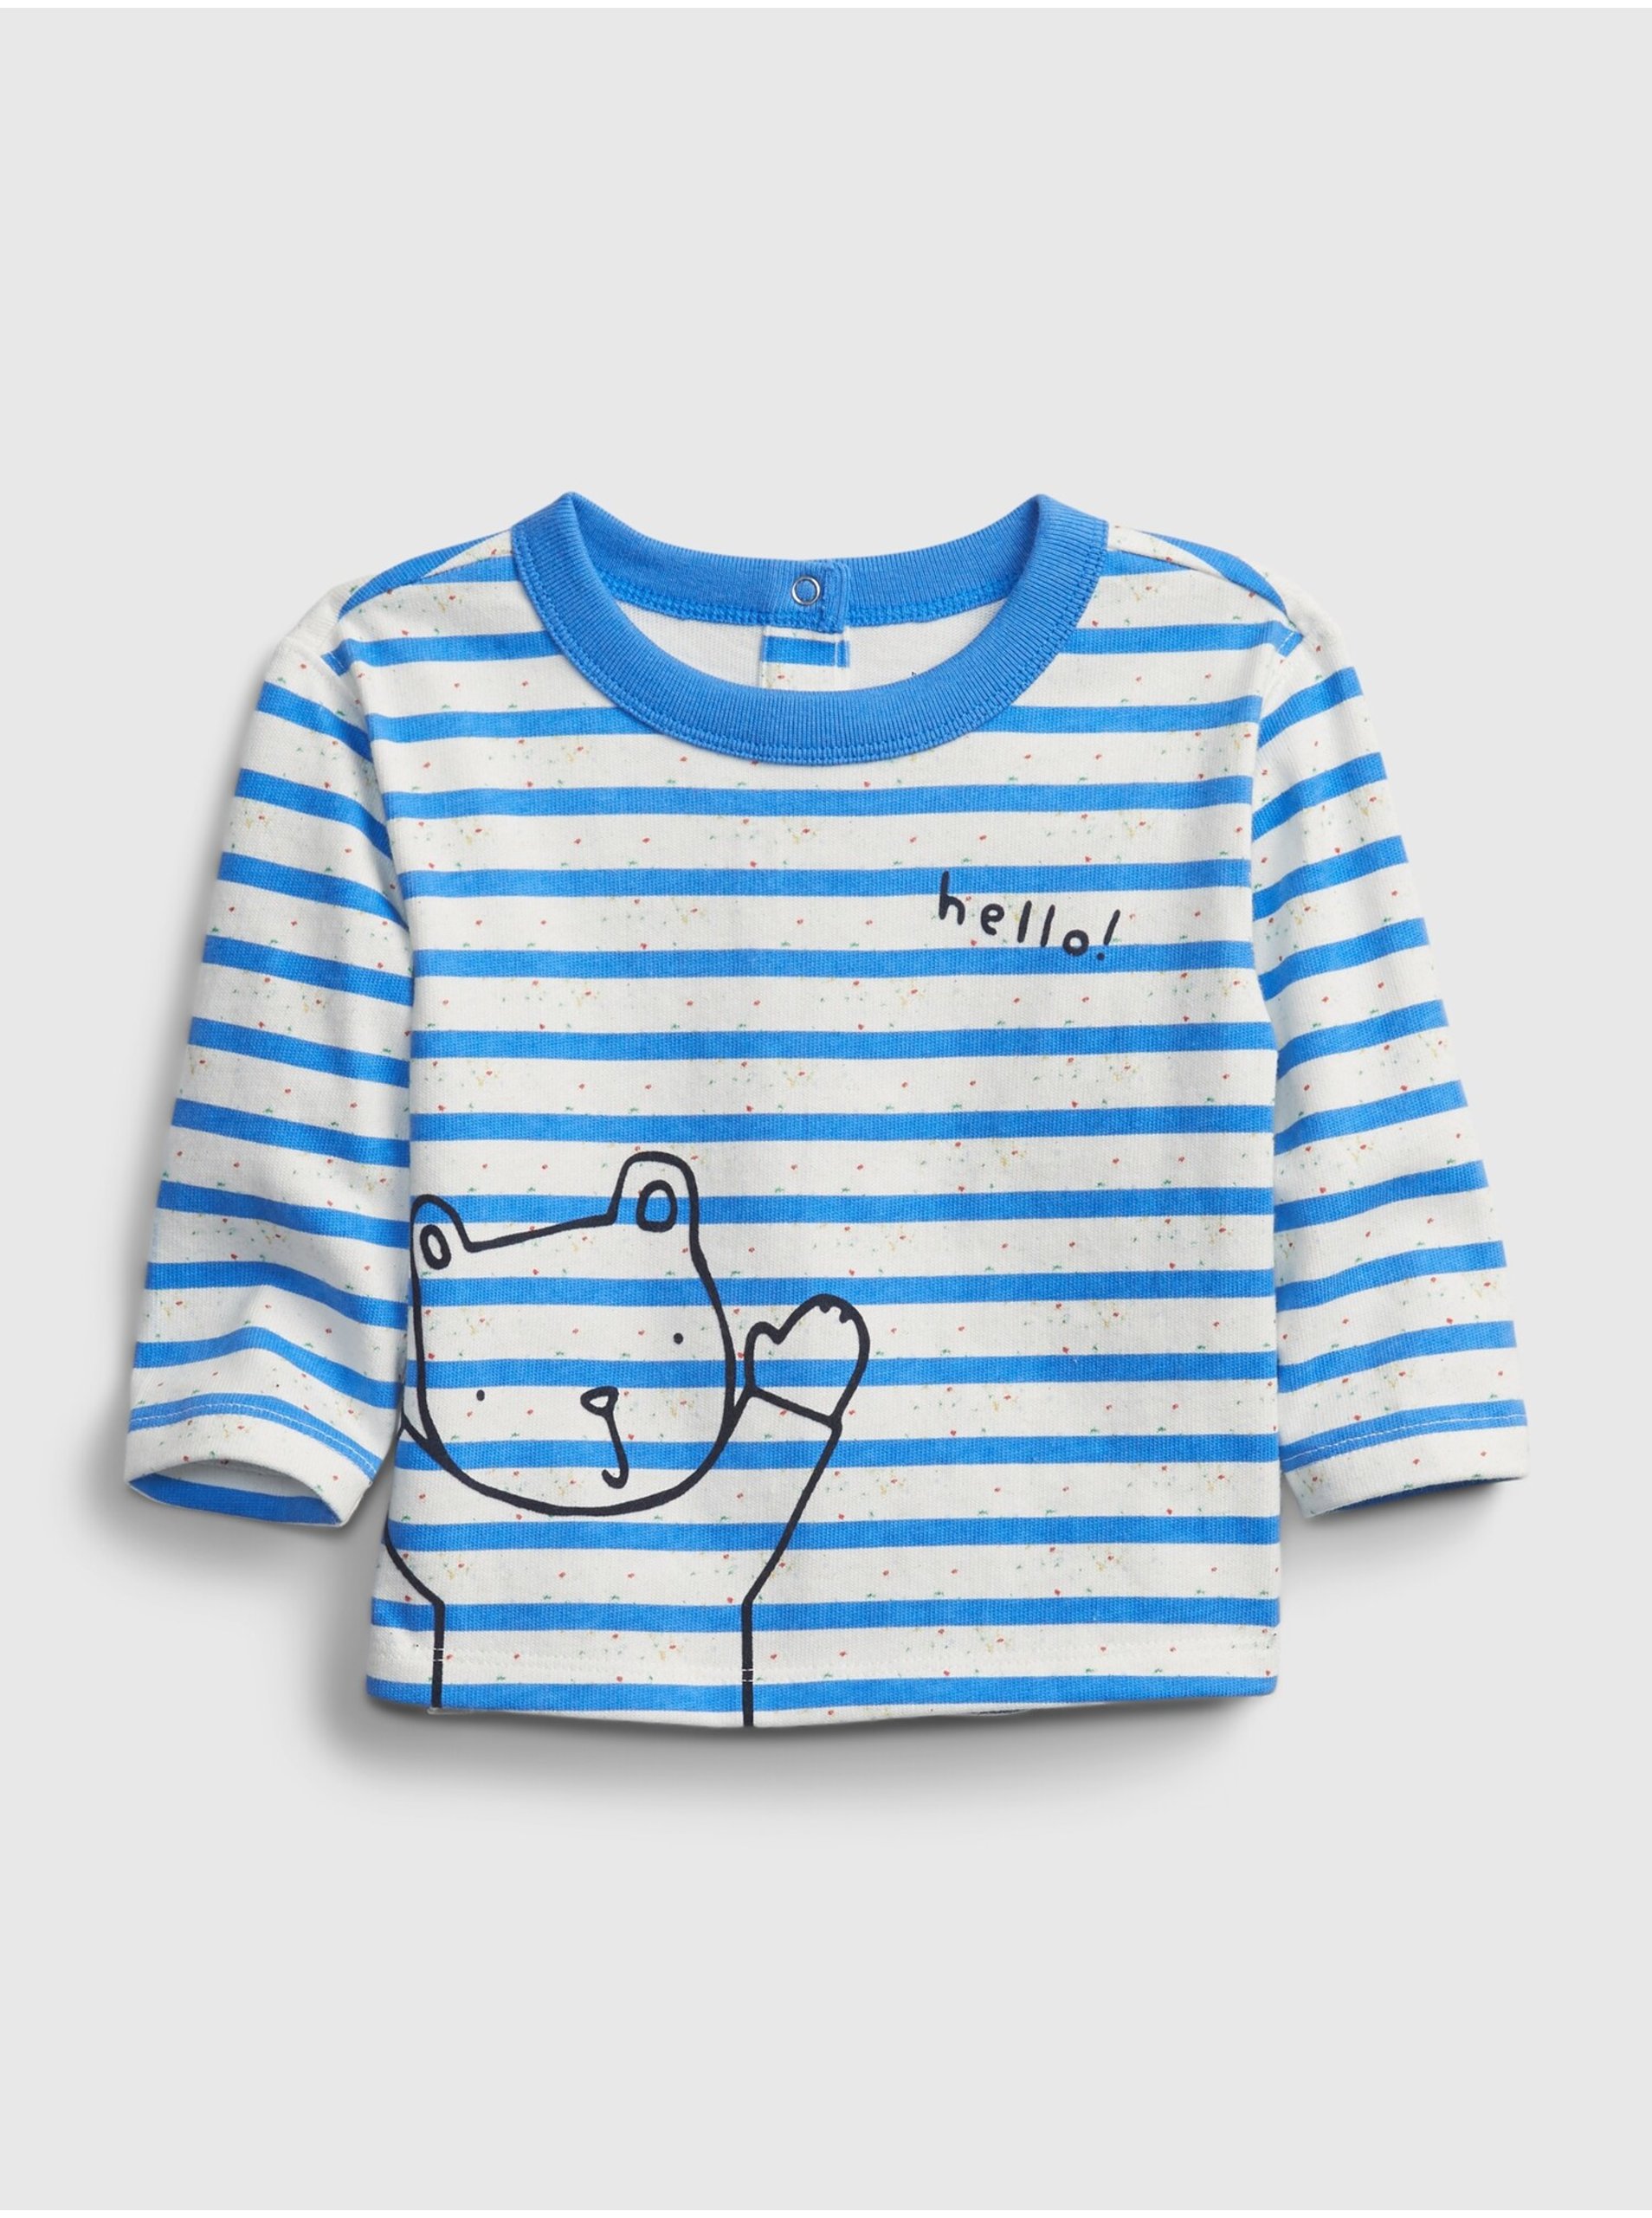 Lacno Baby tričko stripe t-shirt Modrá